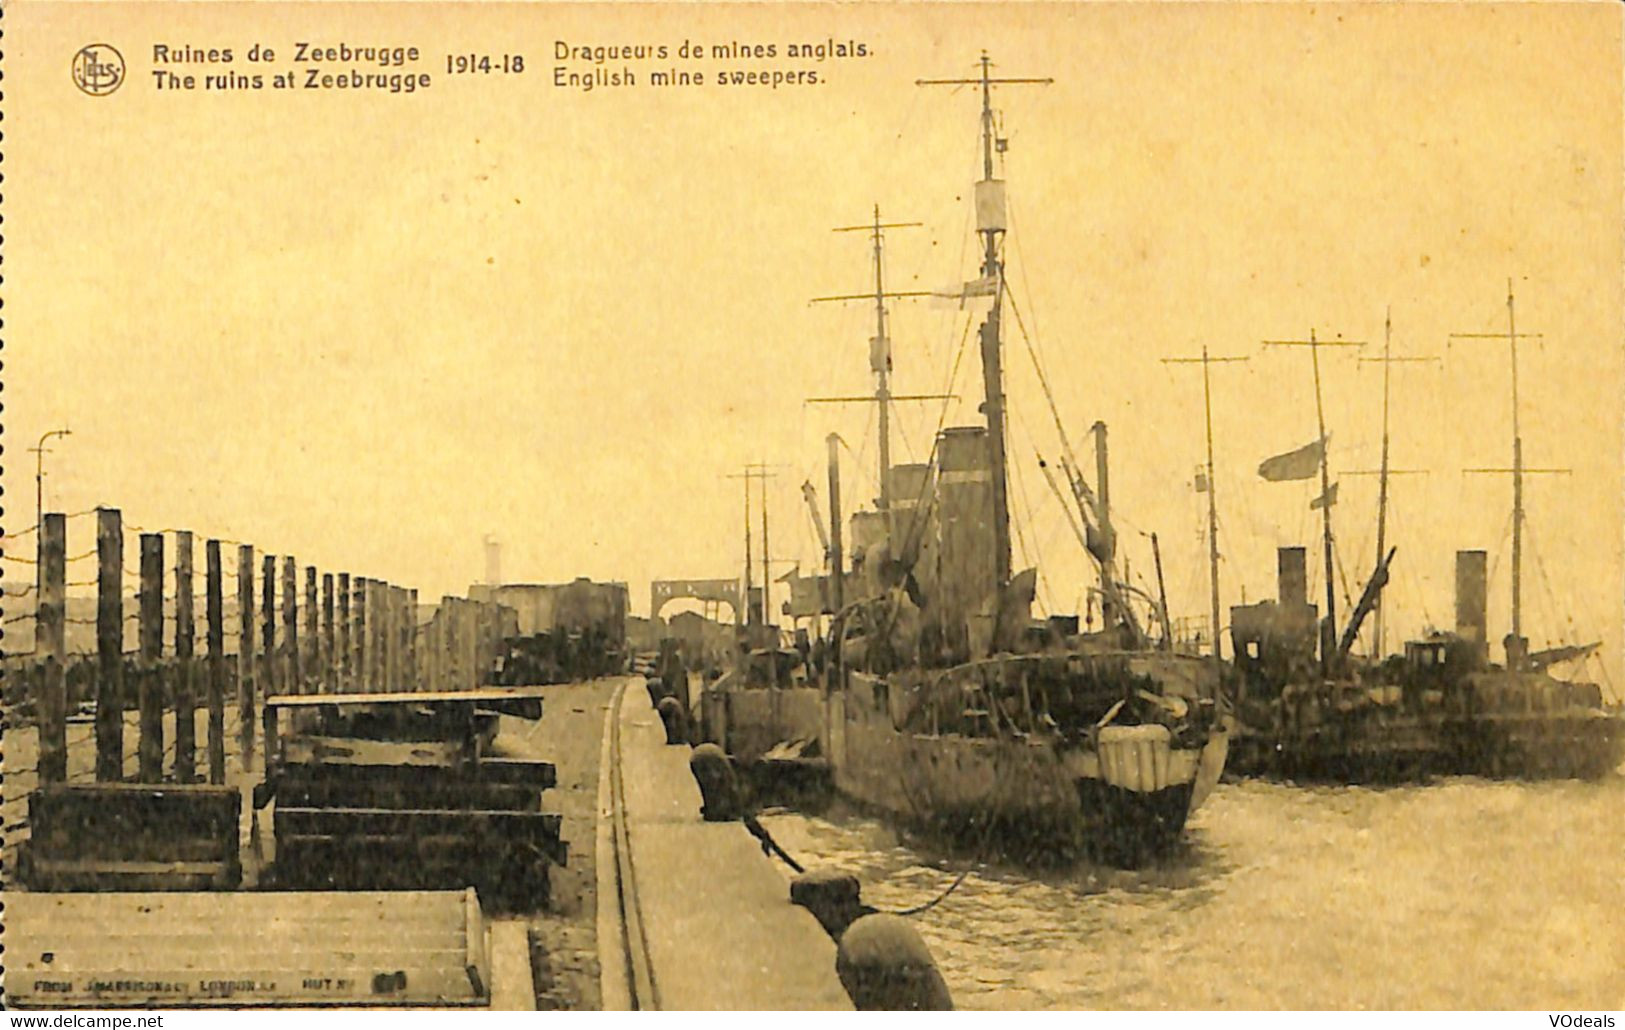 036 342 - CPA - Belgique - Zeebrugge - Ruines De Zeebrugge - 1914-18 - Dragueur De Mines Anglais - Zeebrugge